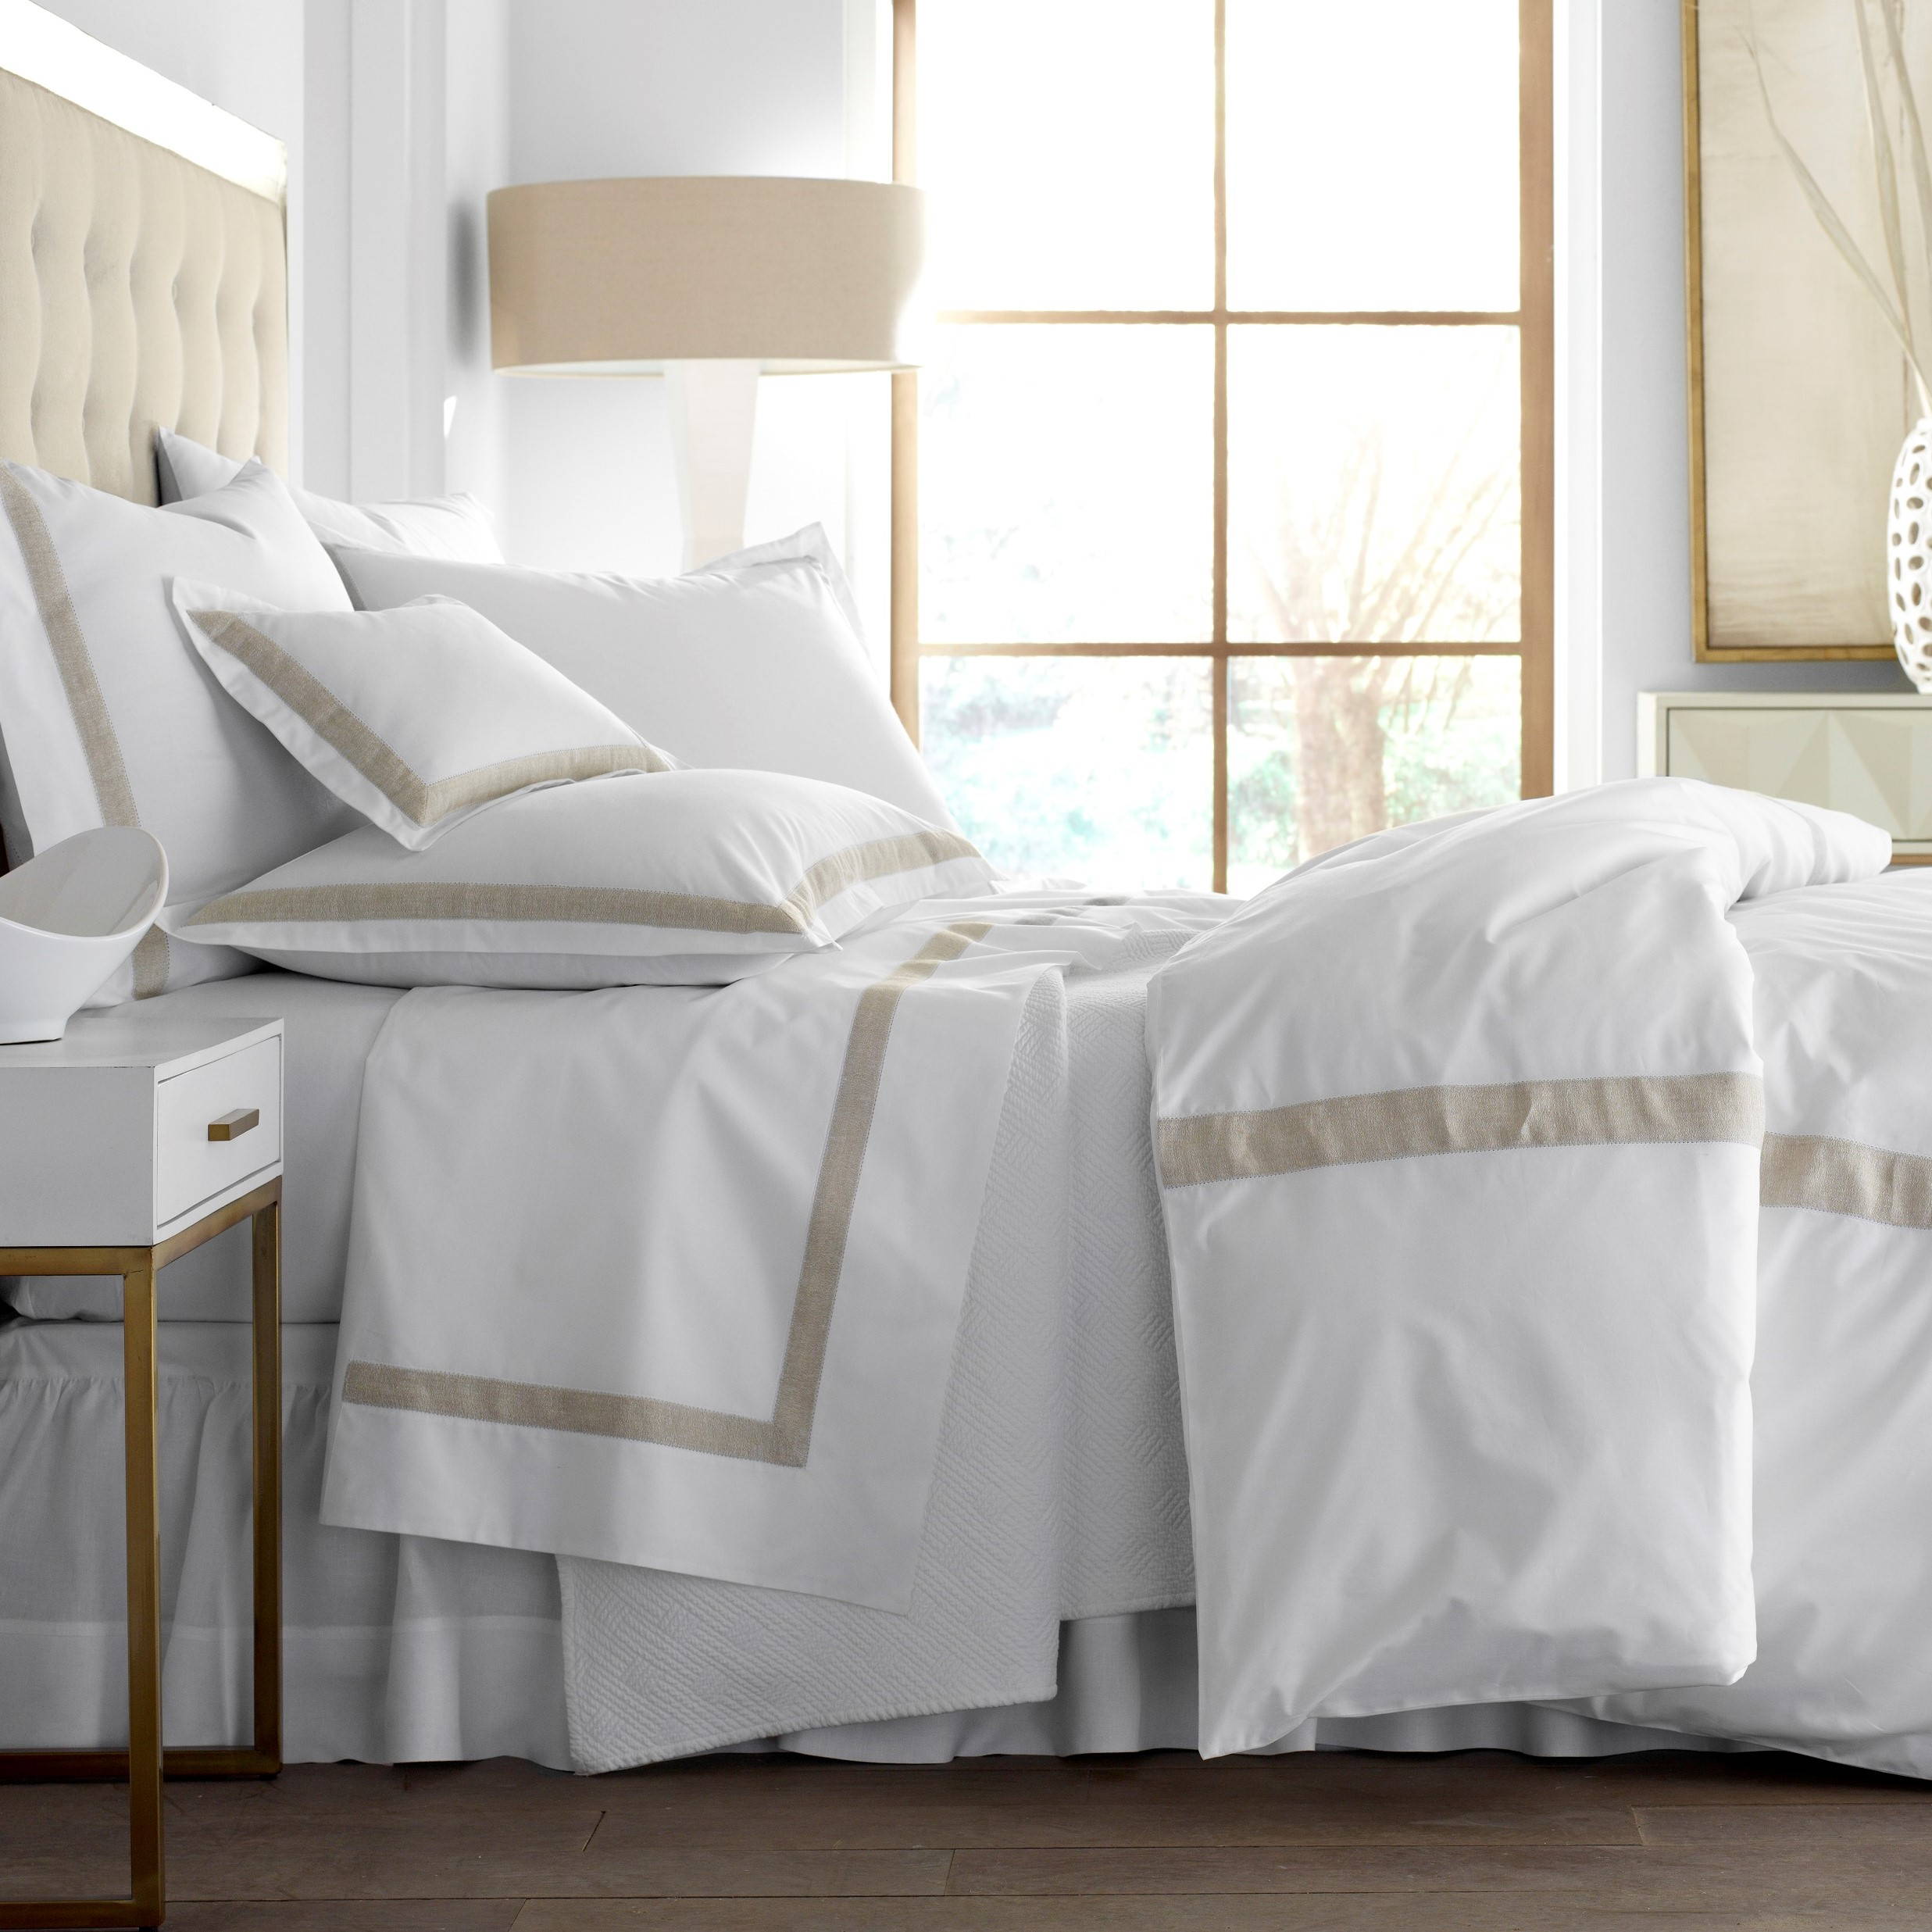 Фото 10 - Комплект постельного белья со вставками 500TC белый.